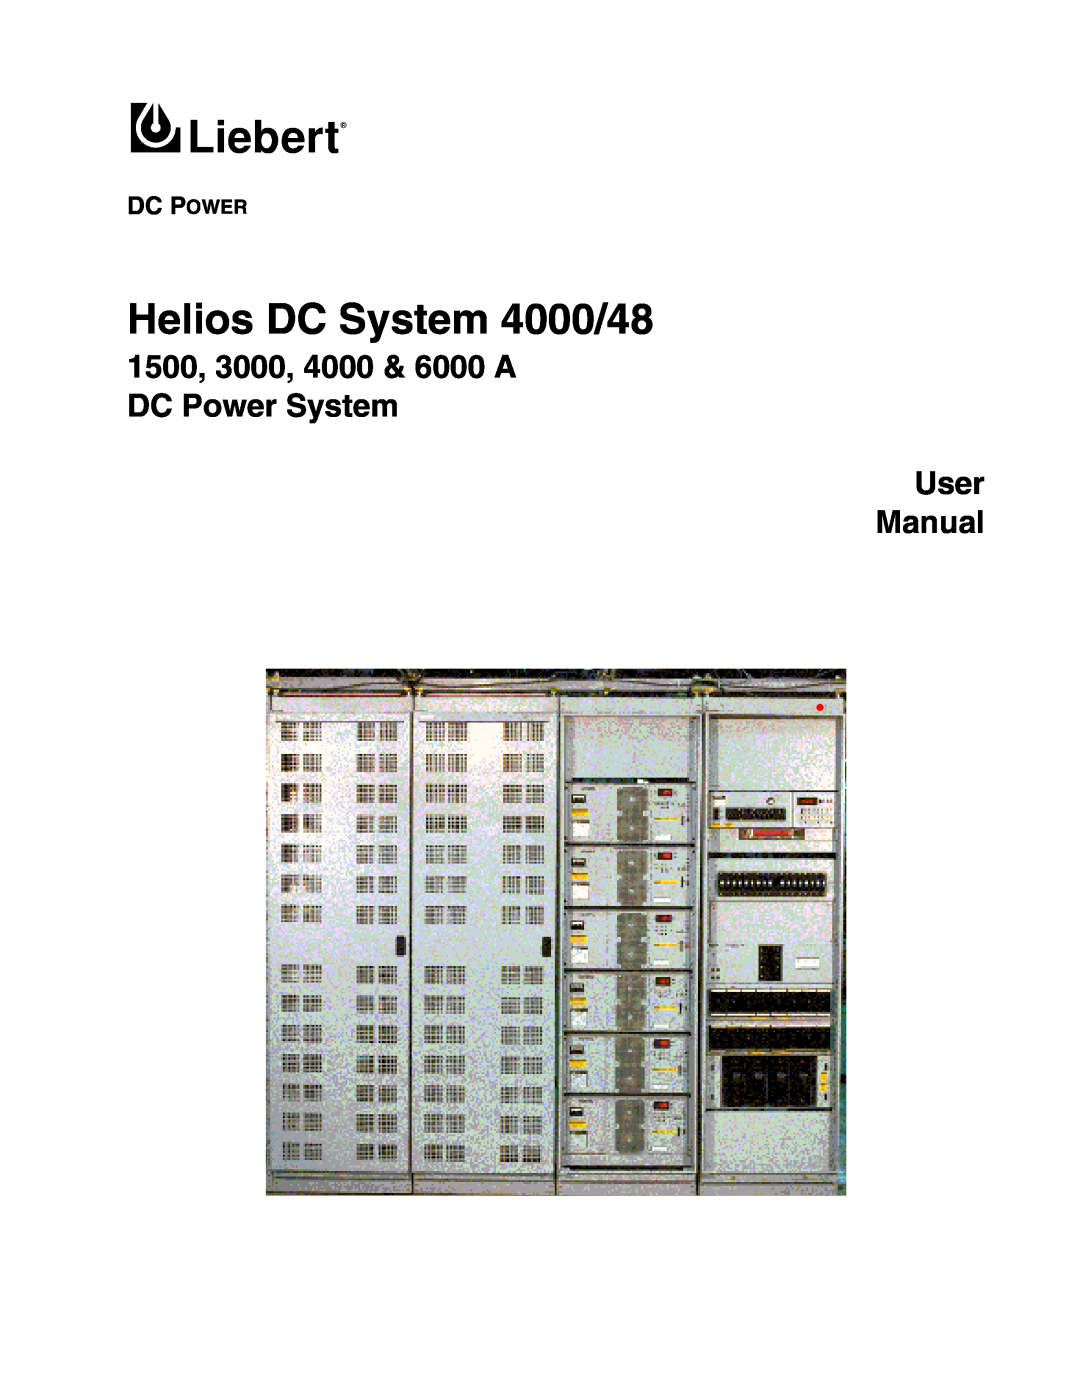 Liebert user manual Dc Power, Helios DC System 4000/48, 1500, 3000, 4000 & 6000 A DC Power System User, Manual 